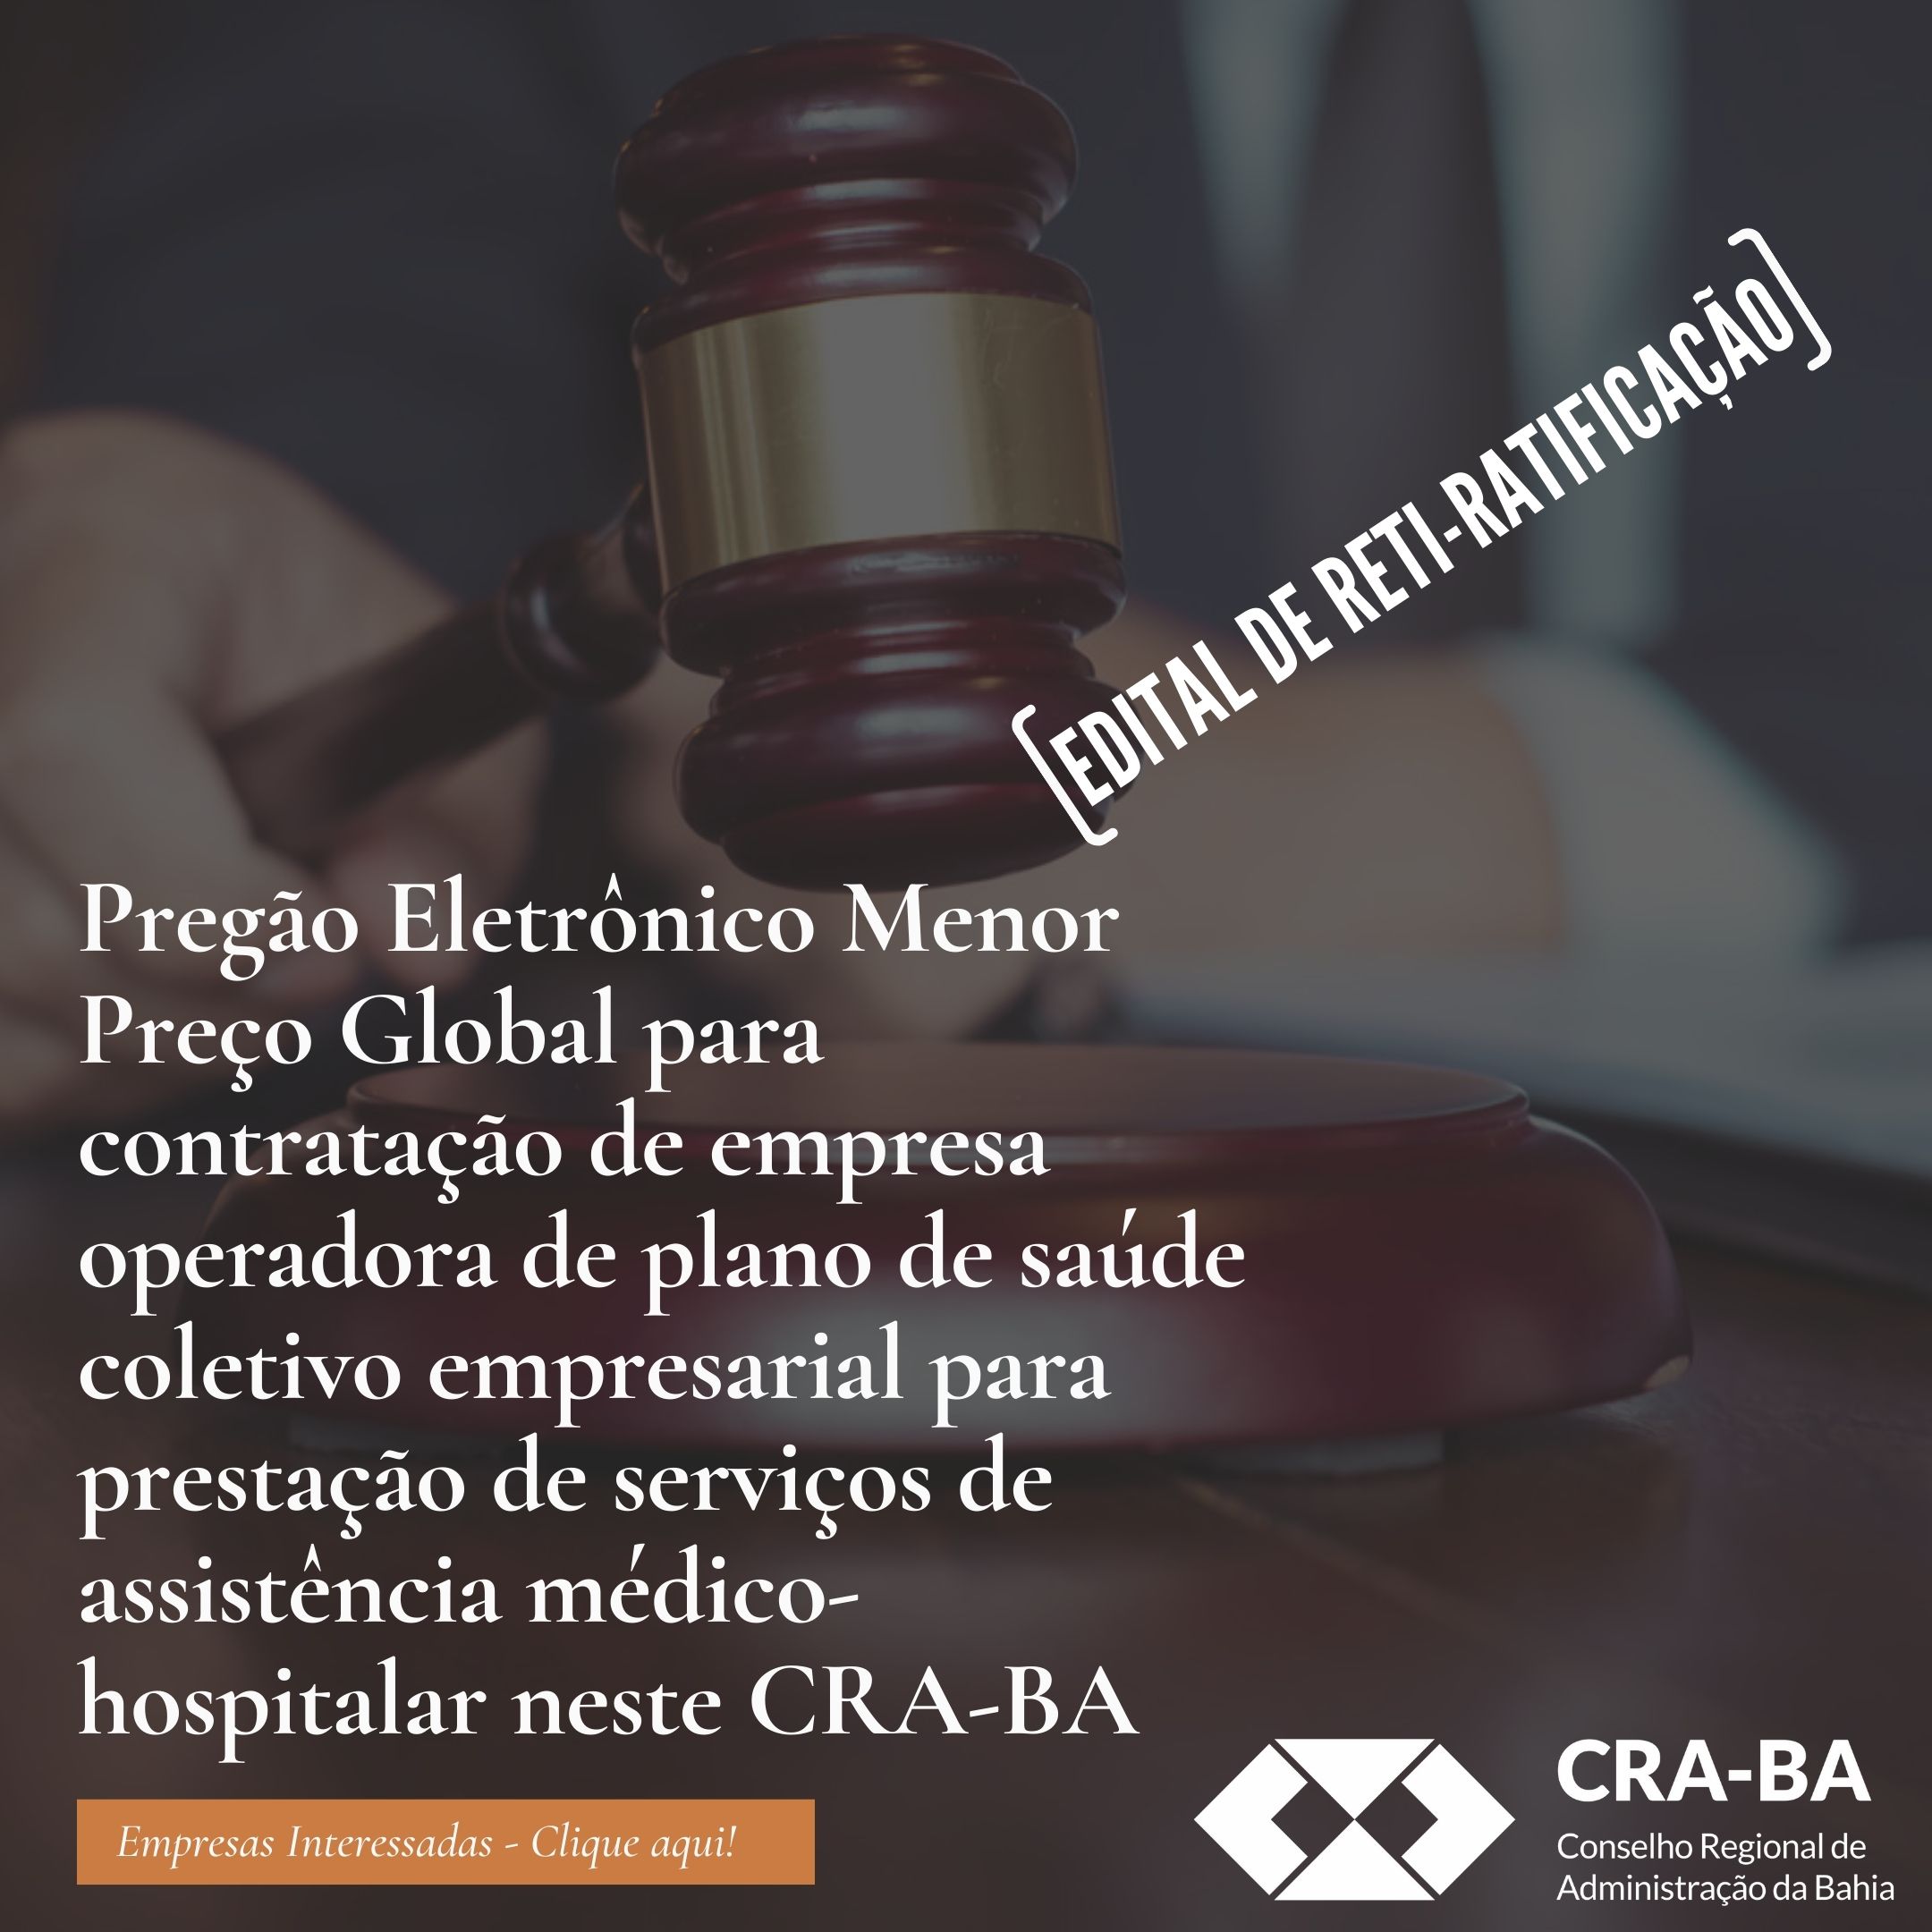 You are currently viewing Pregão Eletrônico CRA-BA 03/2022 – Contratação de Plano de Saúde Coletivo – Reti-Ratificação Nº1